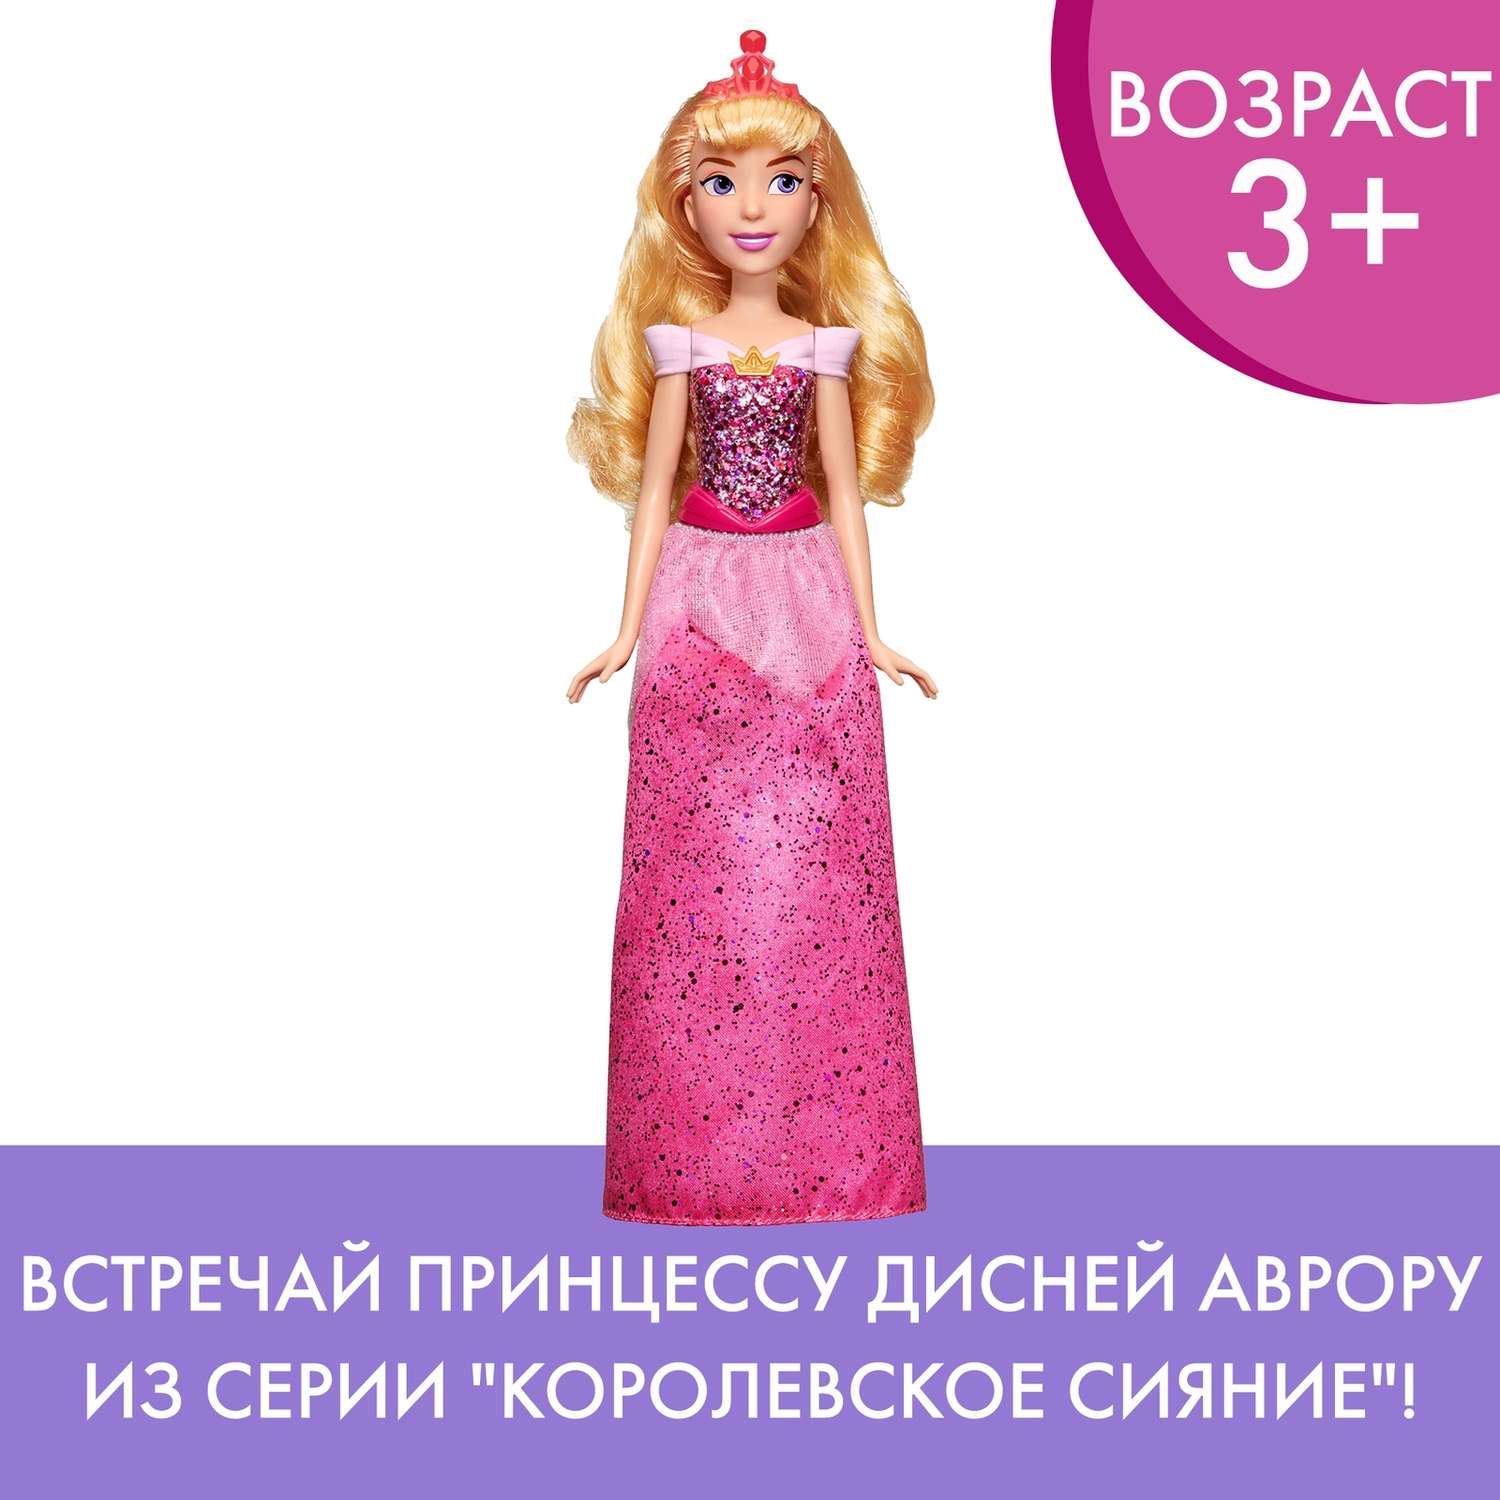 Кукла Disney Princess Hasbro B Аврора E4160EU4 E4021EU4 - фото 13